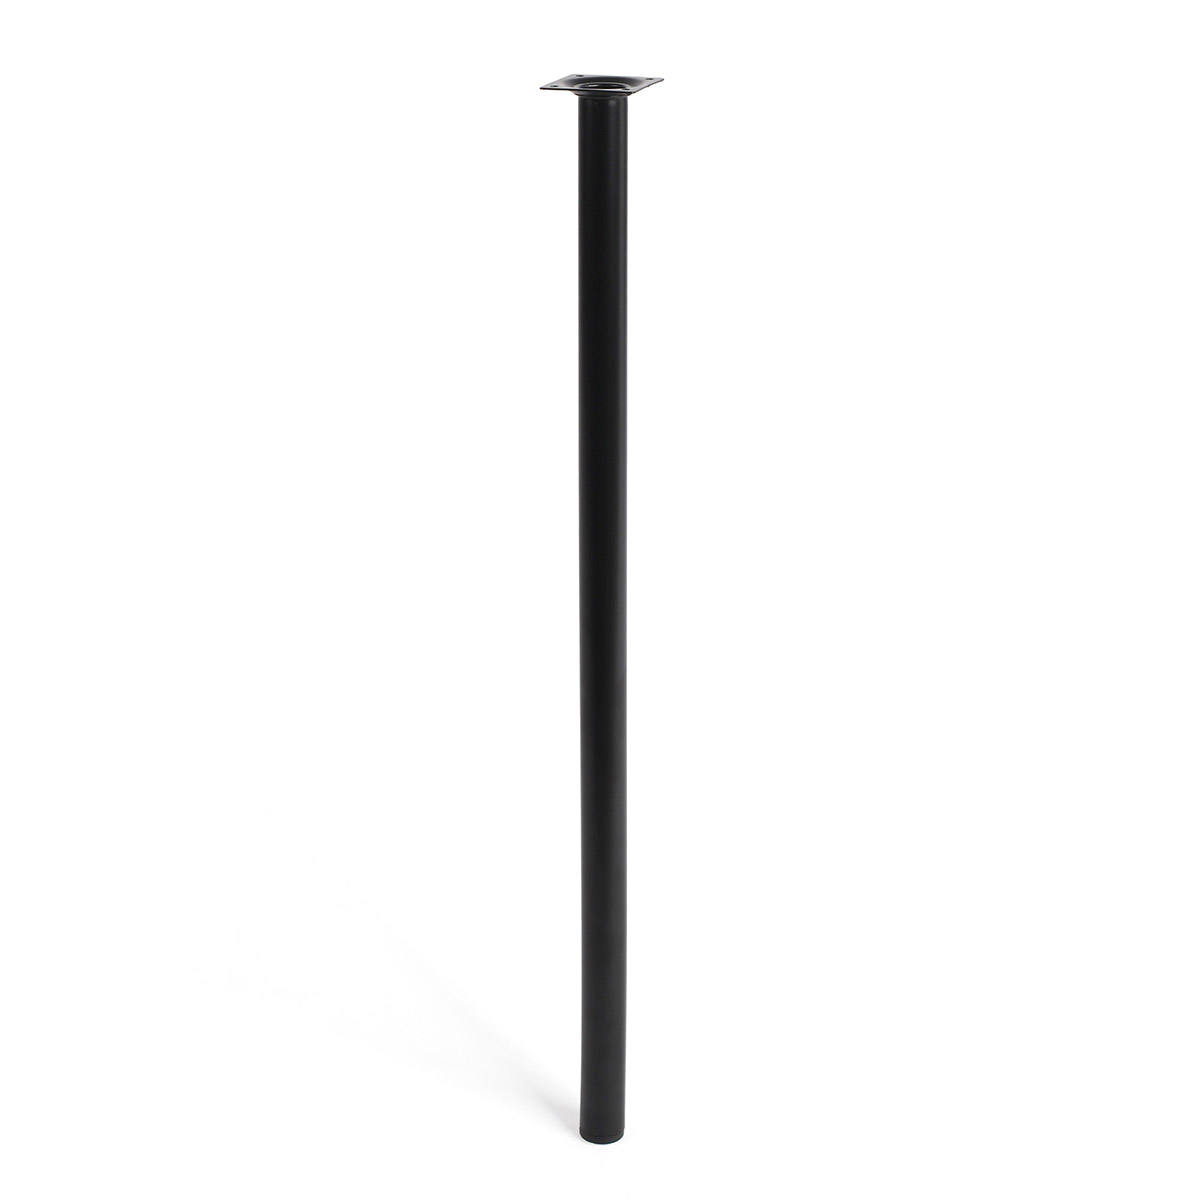 Pata de acero cilíndrica con una altura de 800 mm y acabada en negro. Dimensiones: 30x30x800 mm